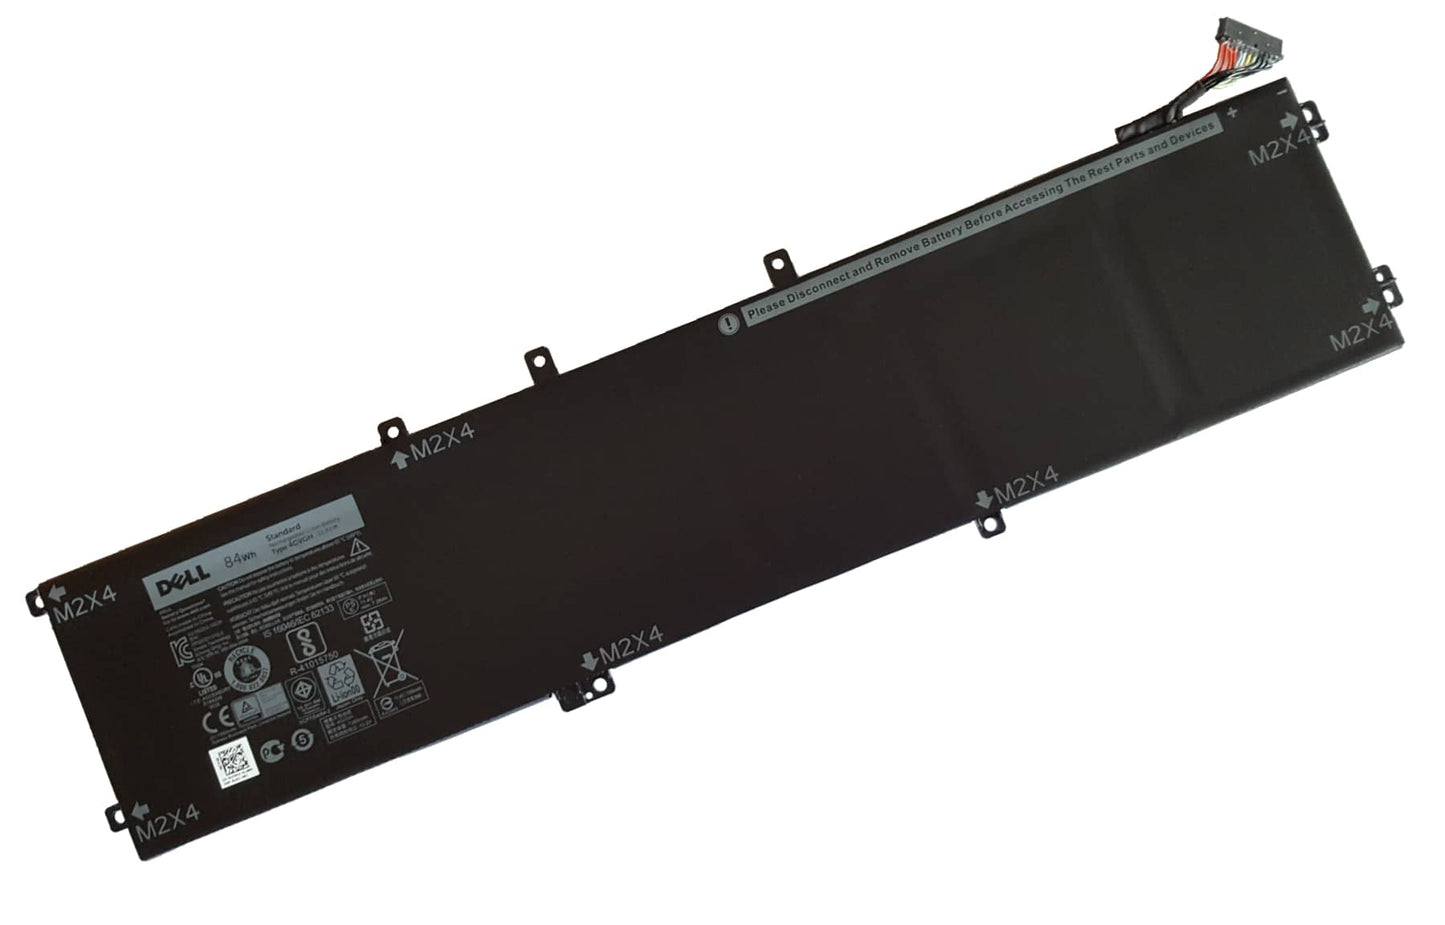 Dell XPS 9550 Precision 5510 84Wh Laptop Battery 4GVGH 1P6KD T453X | Black Cat PC